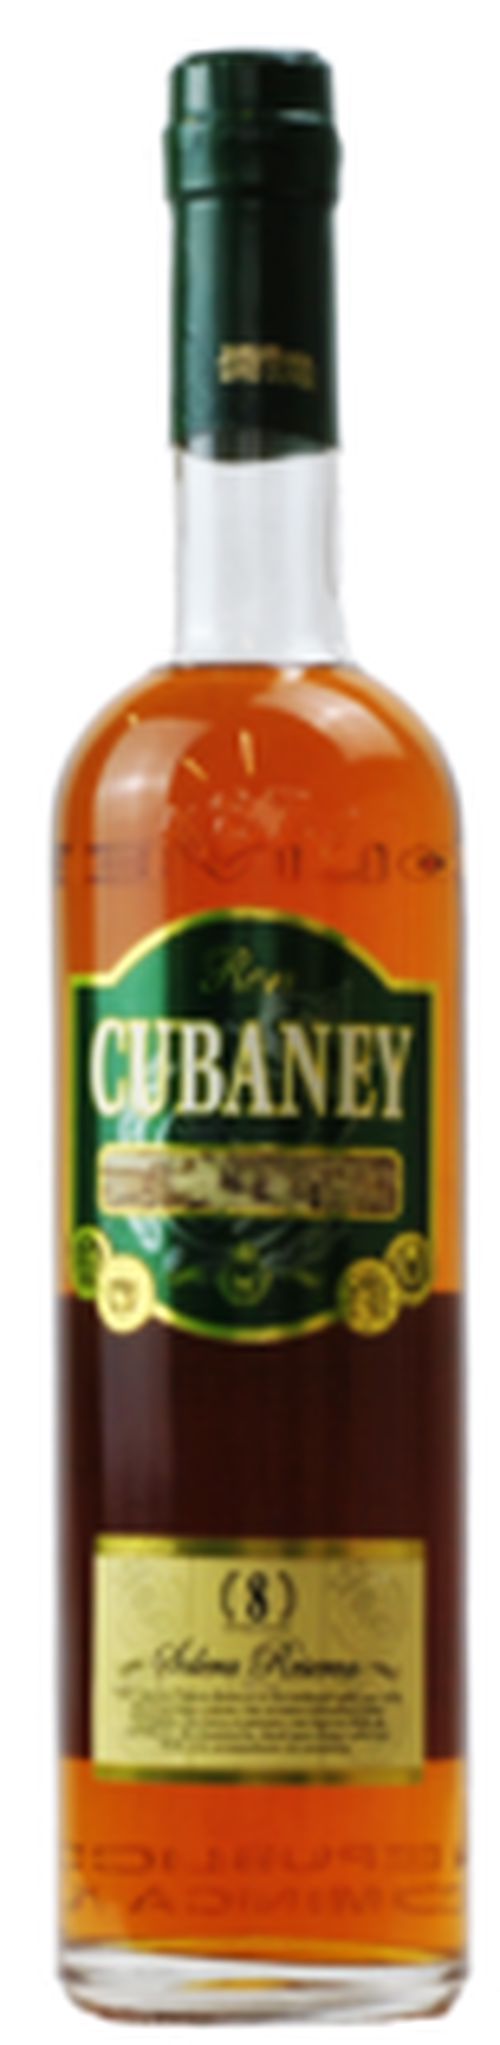 Cubaney 8 Solera Reserva 38% 0,7L